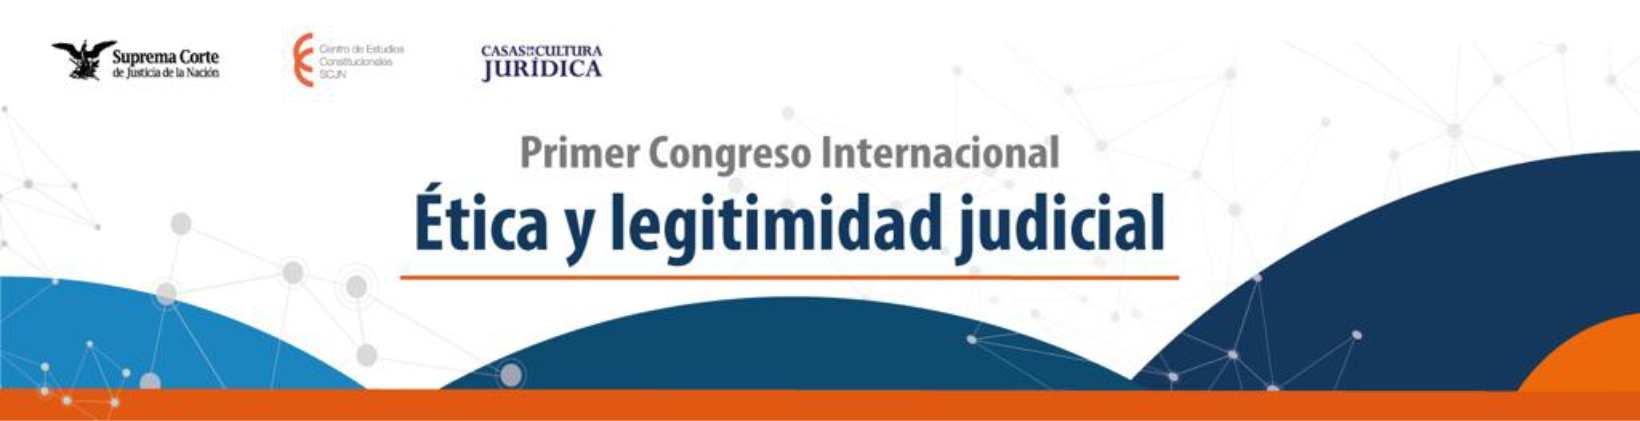 Banner del Primer Congreso Internacional “Ética y legitimidad judicial”